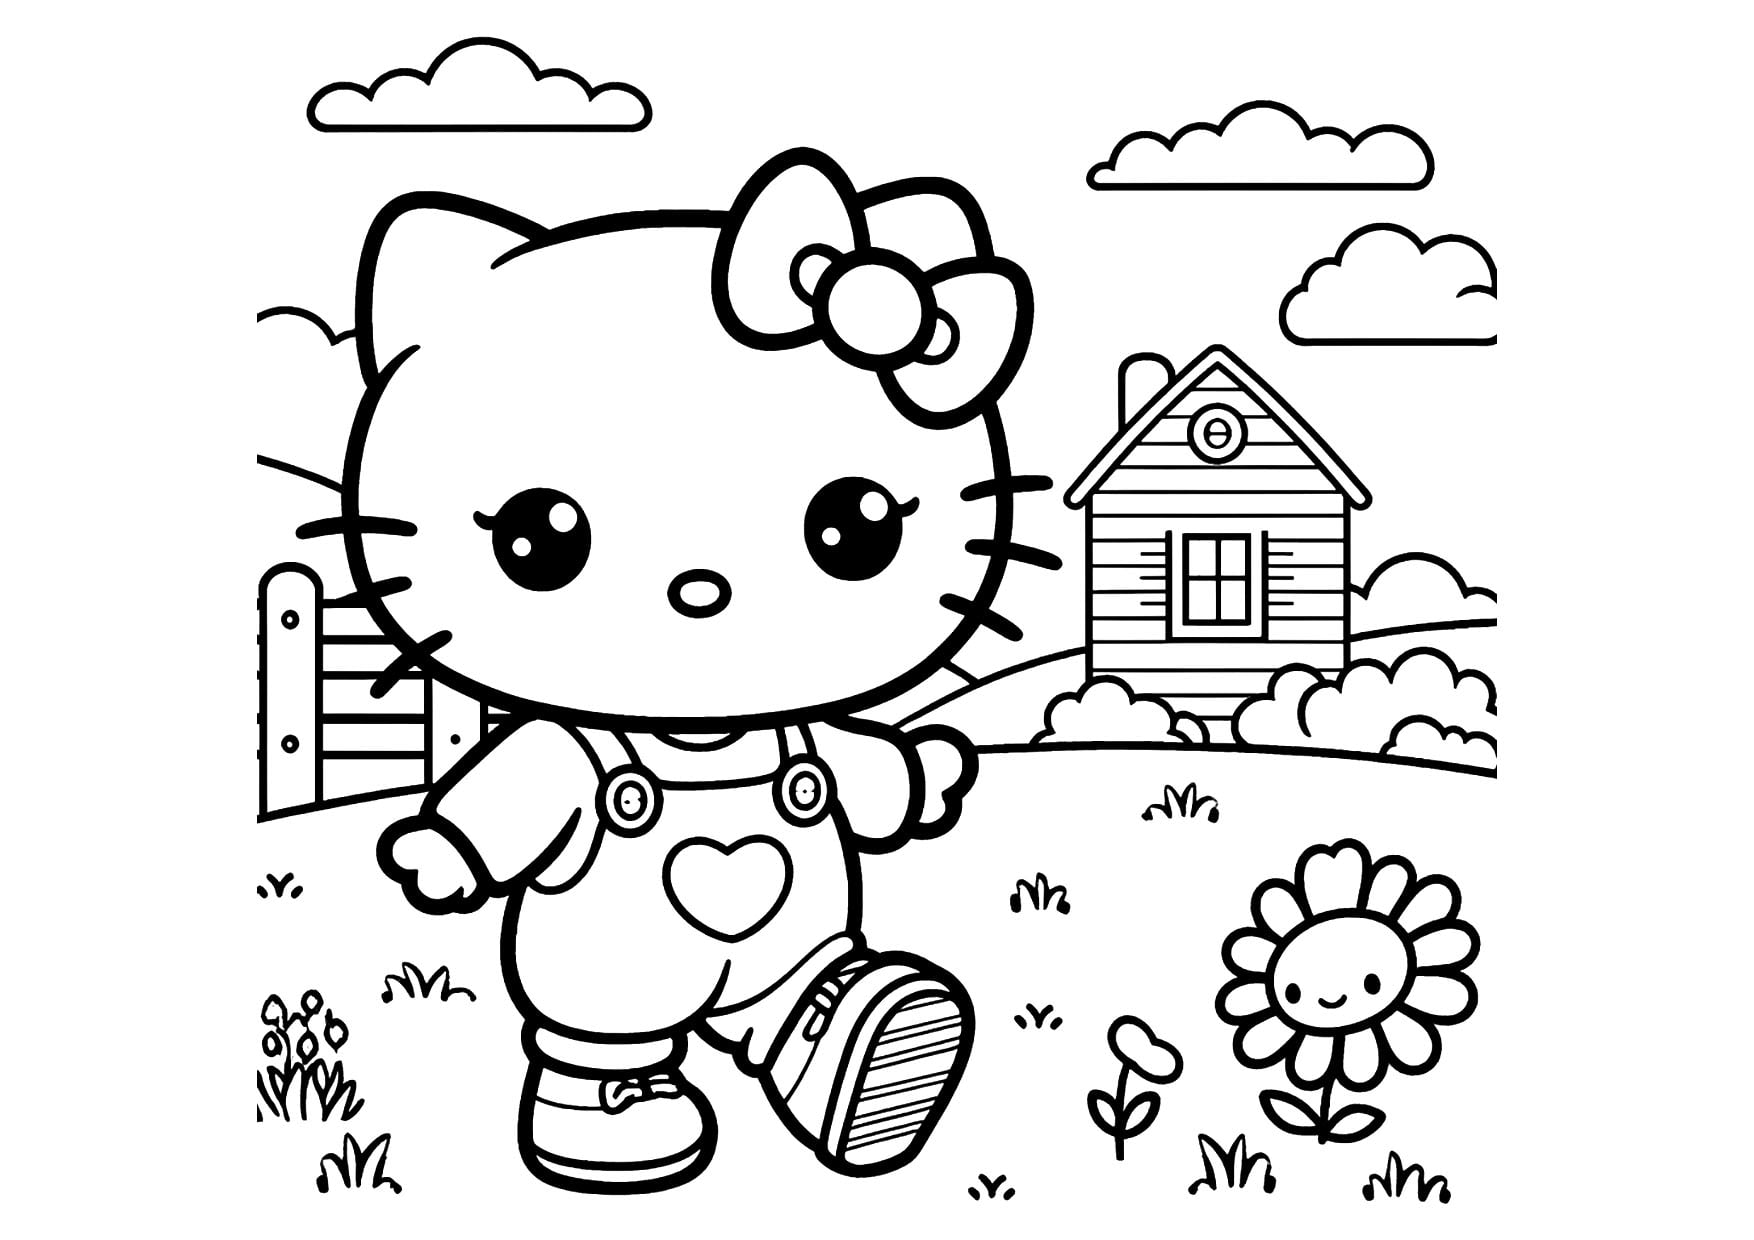 Danh sách các phim hoạt hình Hello Kitty